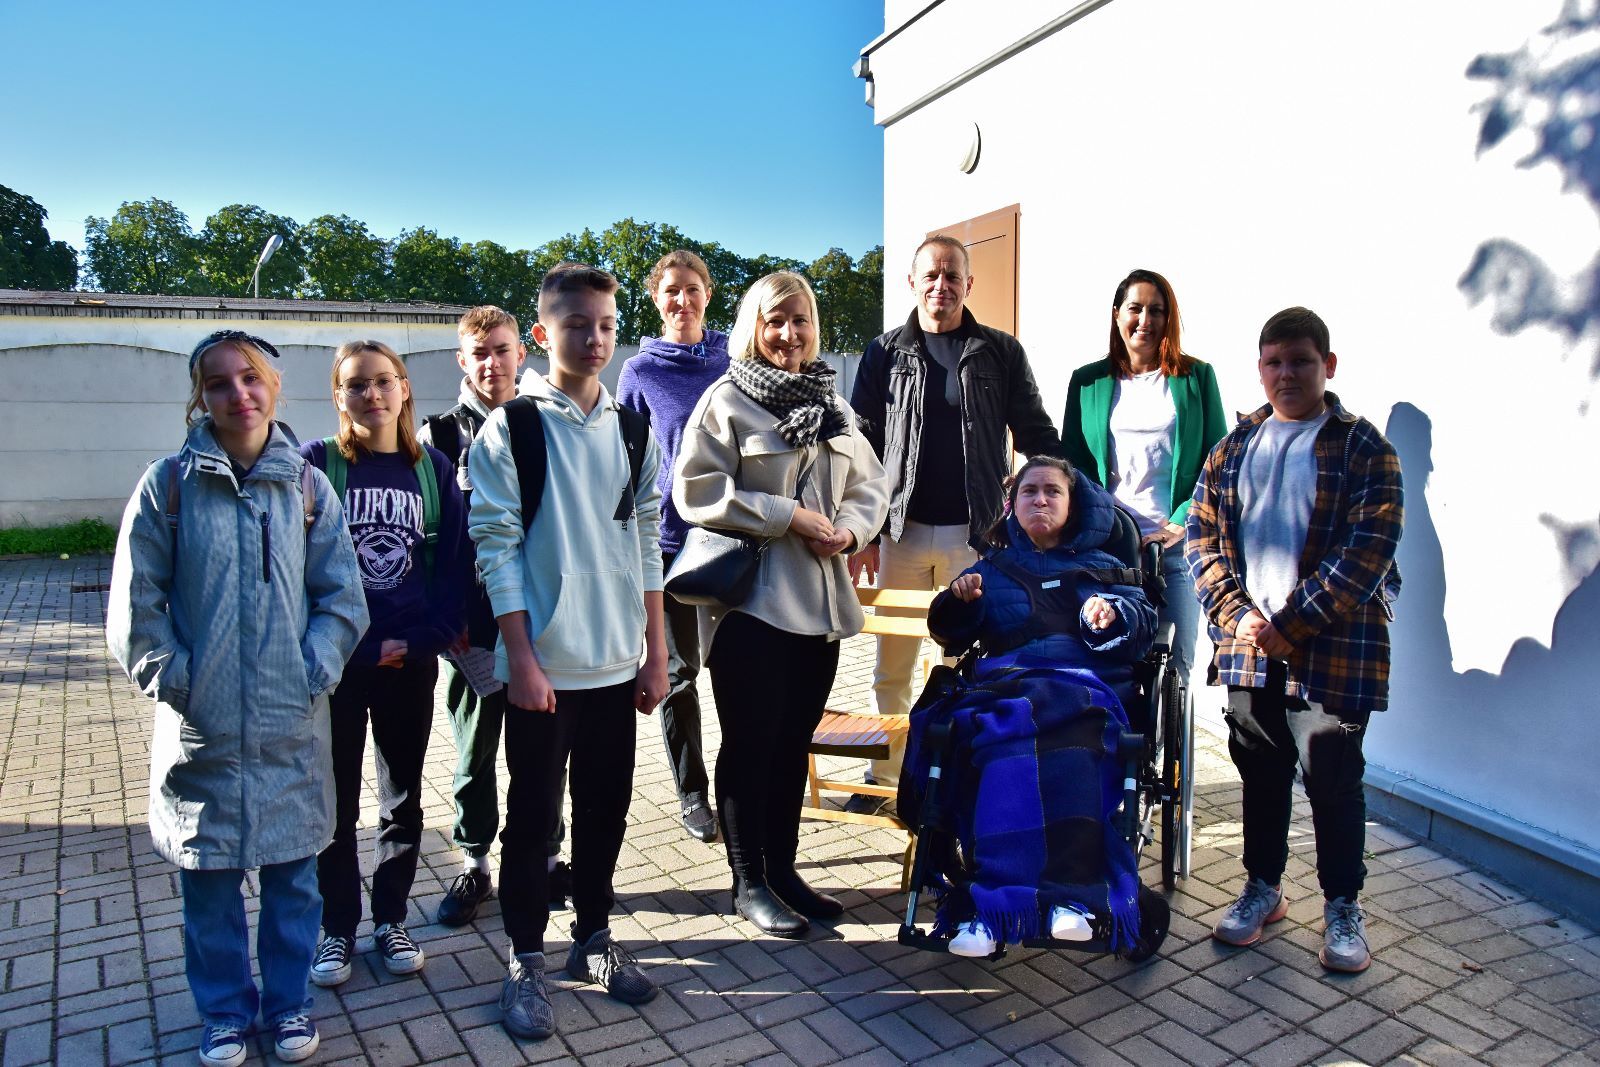 Na zdjęciu widać grupę młodych osób (uczniów szkół podstawowych) wraz z opiekunami oraz osobą na wózku inwalidzkim.